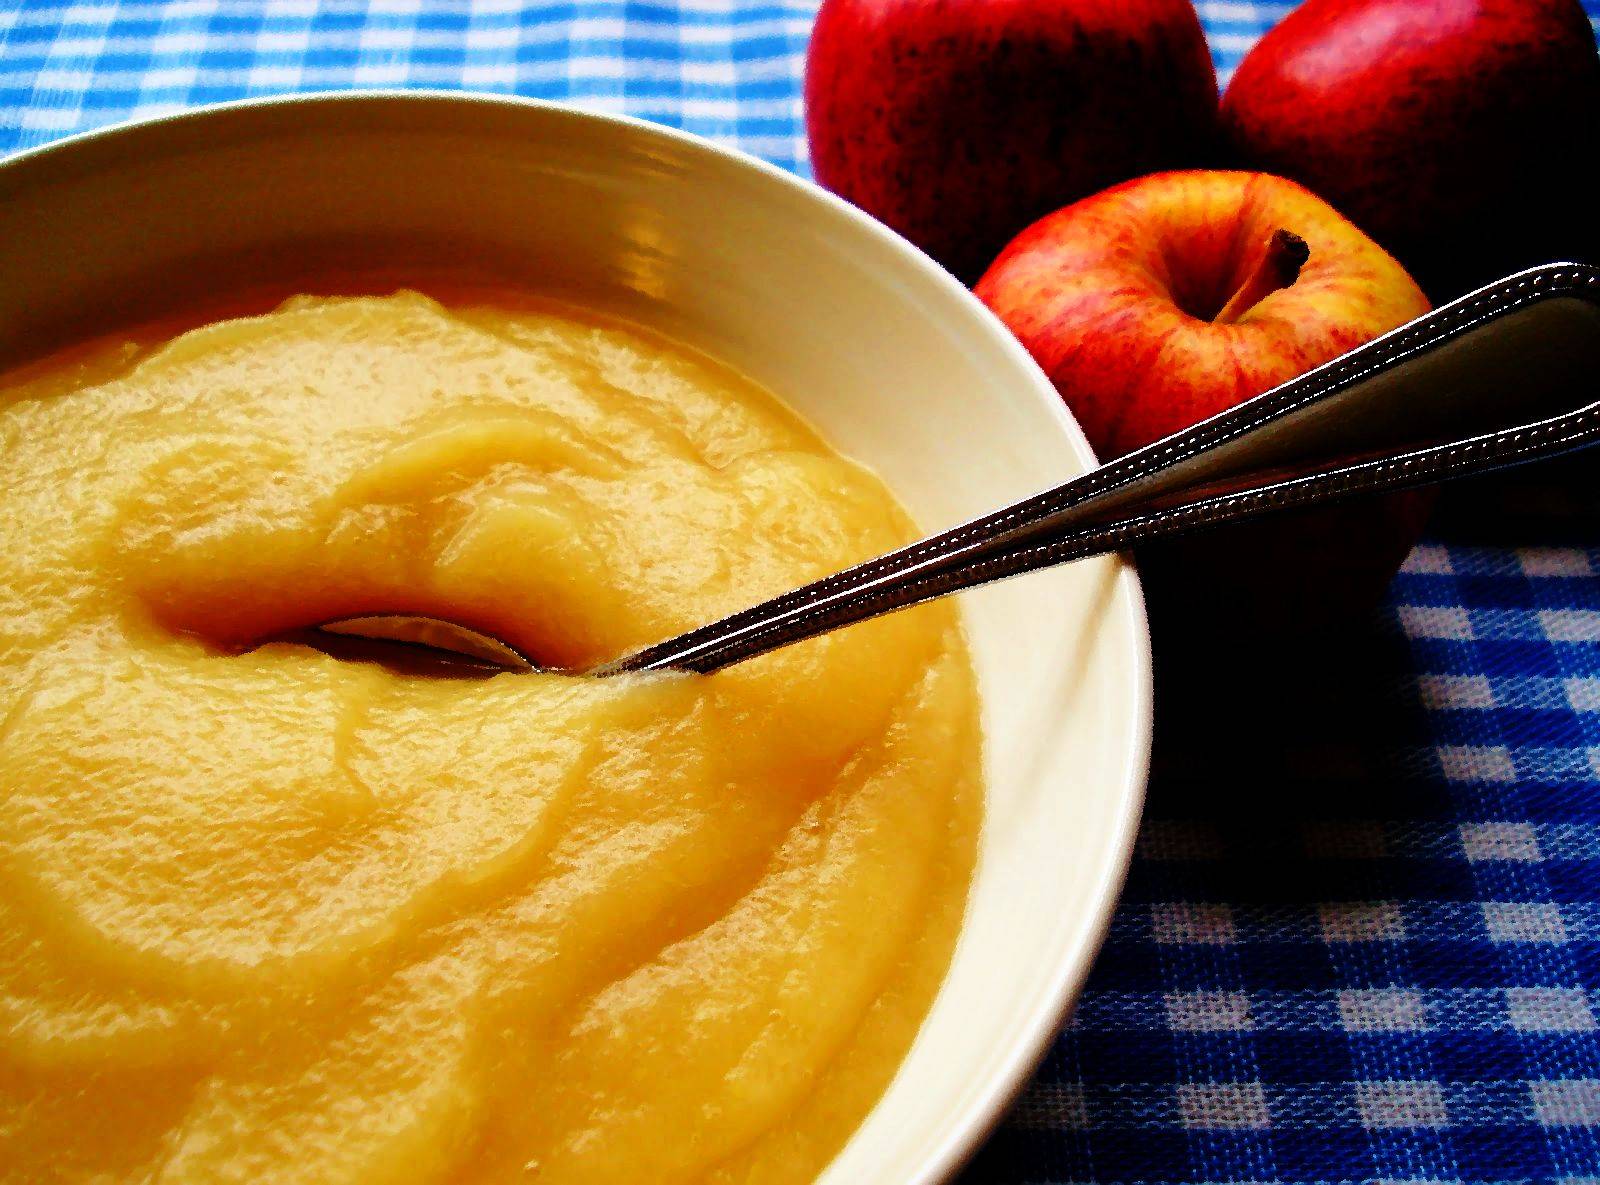 Как готовить яблочное пюре для прикорма грудничку в домашних условиях: рецепты, схема ввода в рацион ребенка свежих яблок